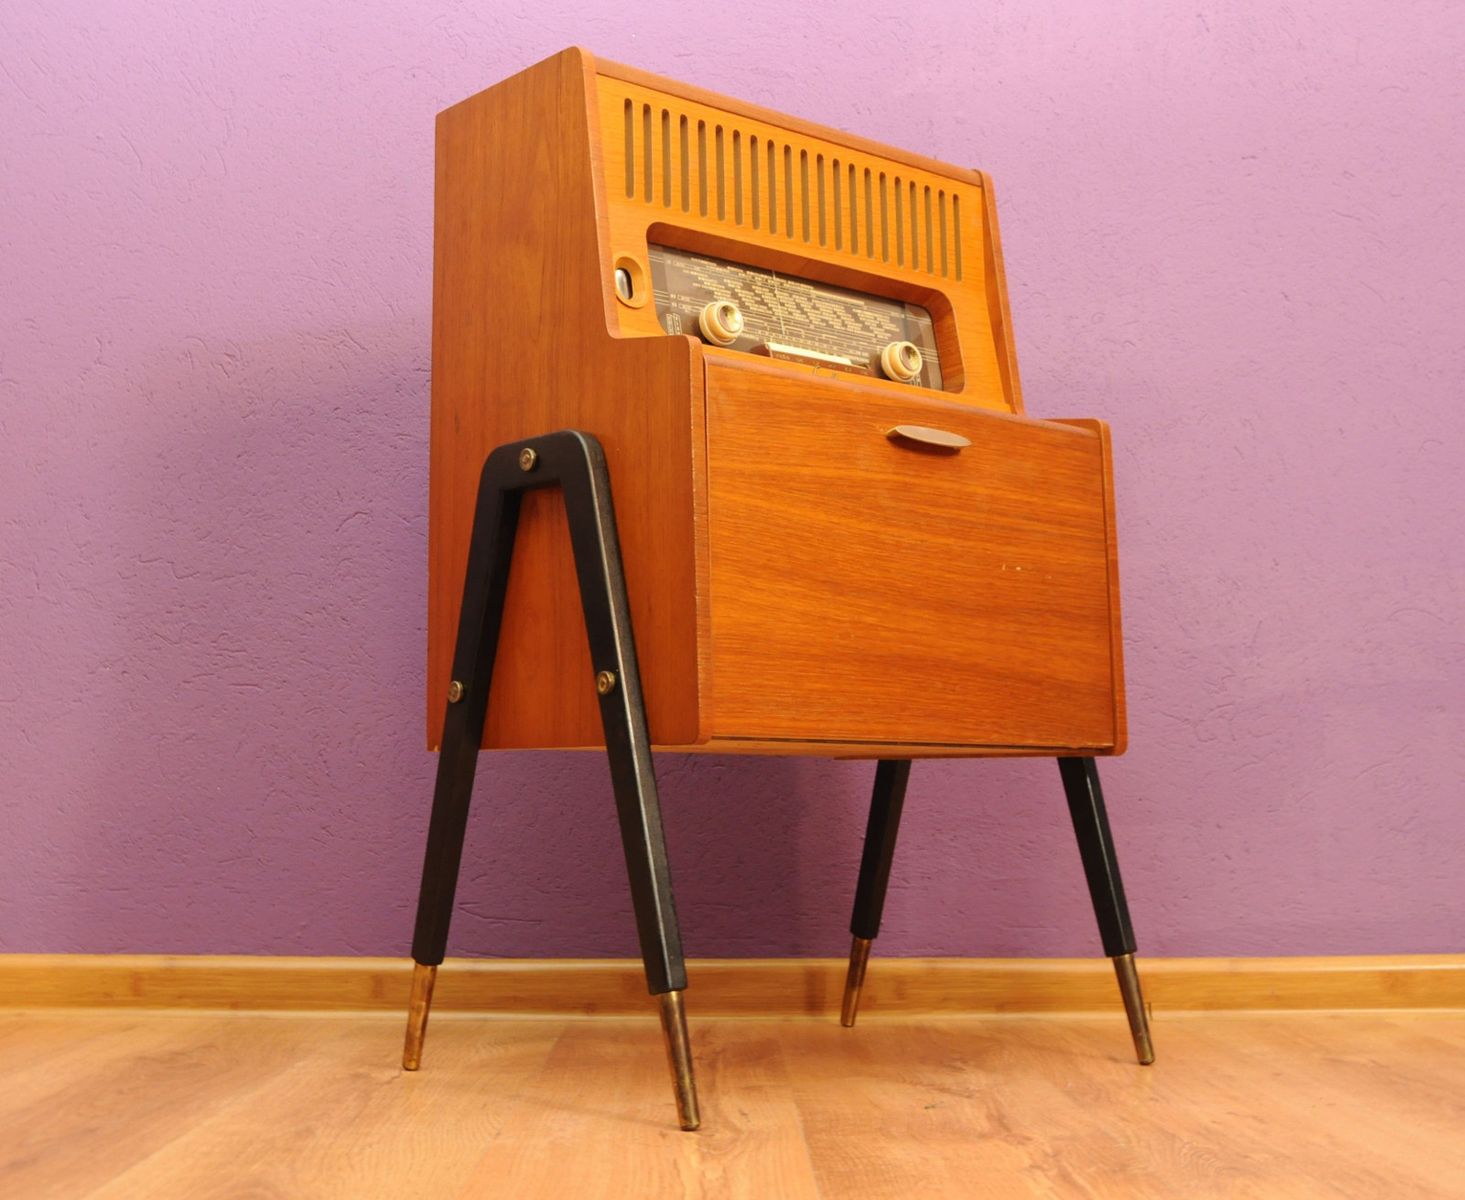 Vintage Radio Sale 46